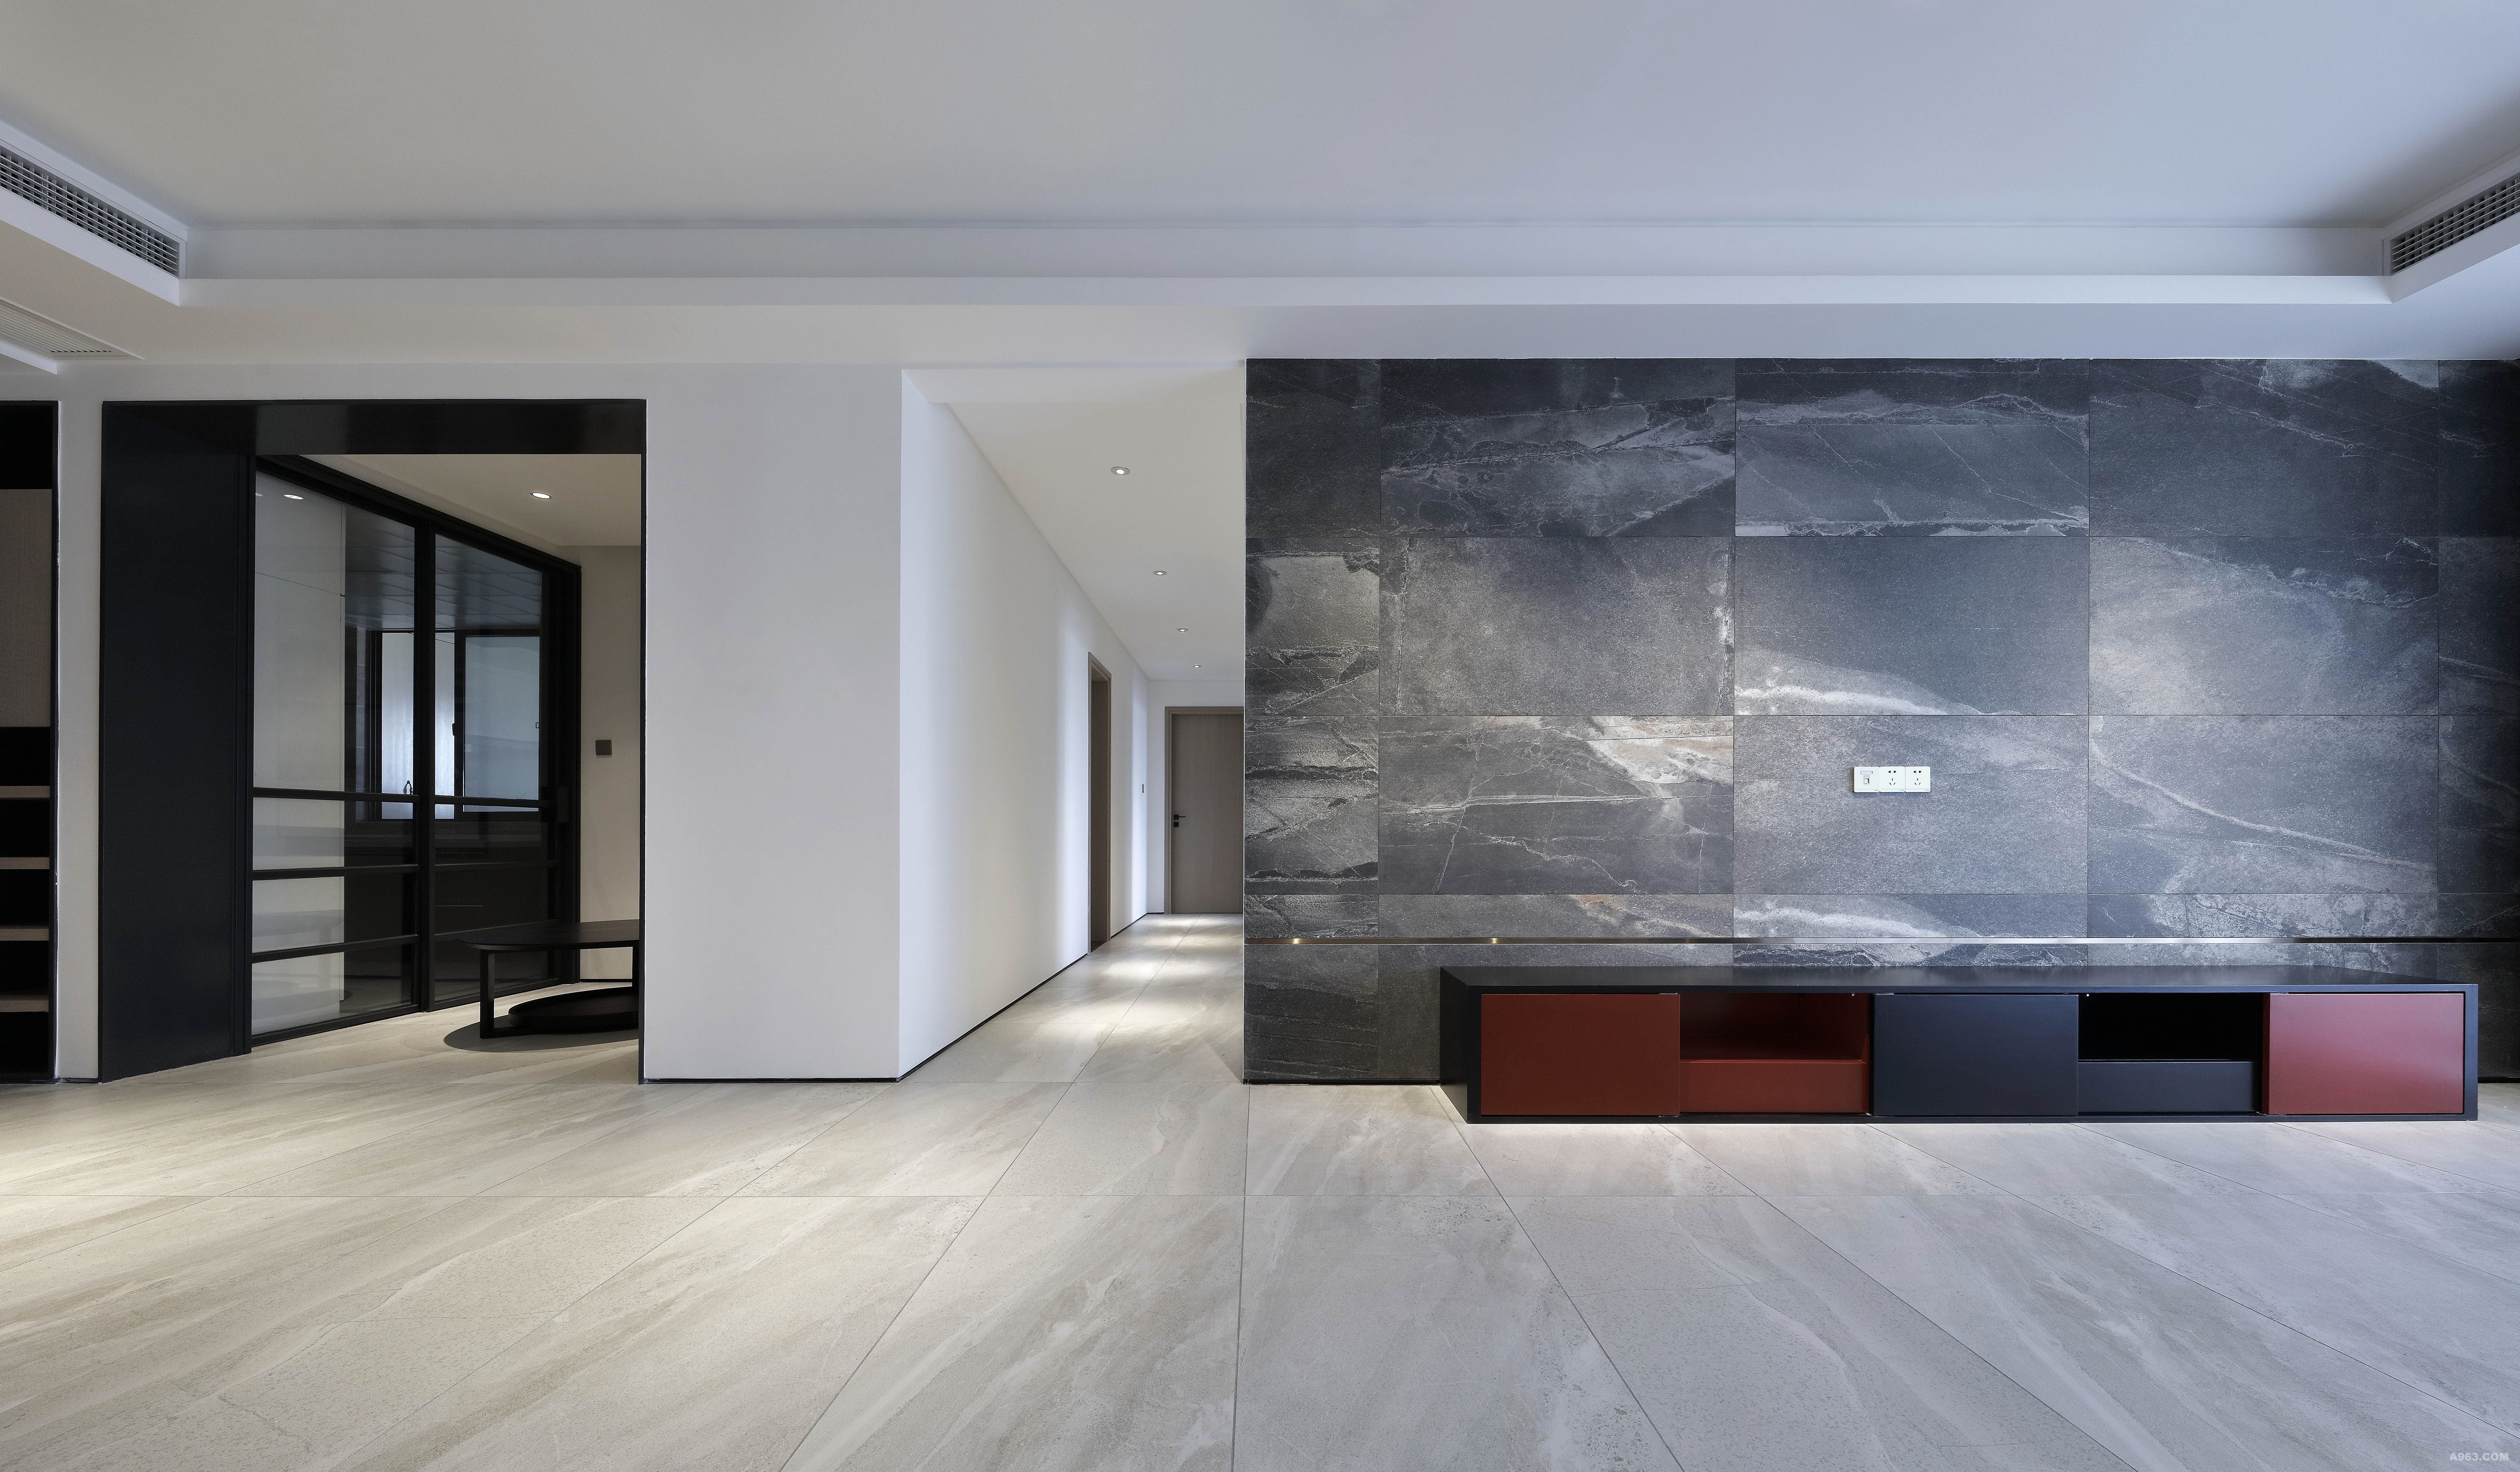 客厅
抽像有质感的材质配合窄边钛金拉丝面线条。为背景墙增加了细节。